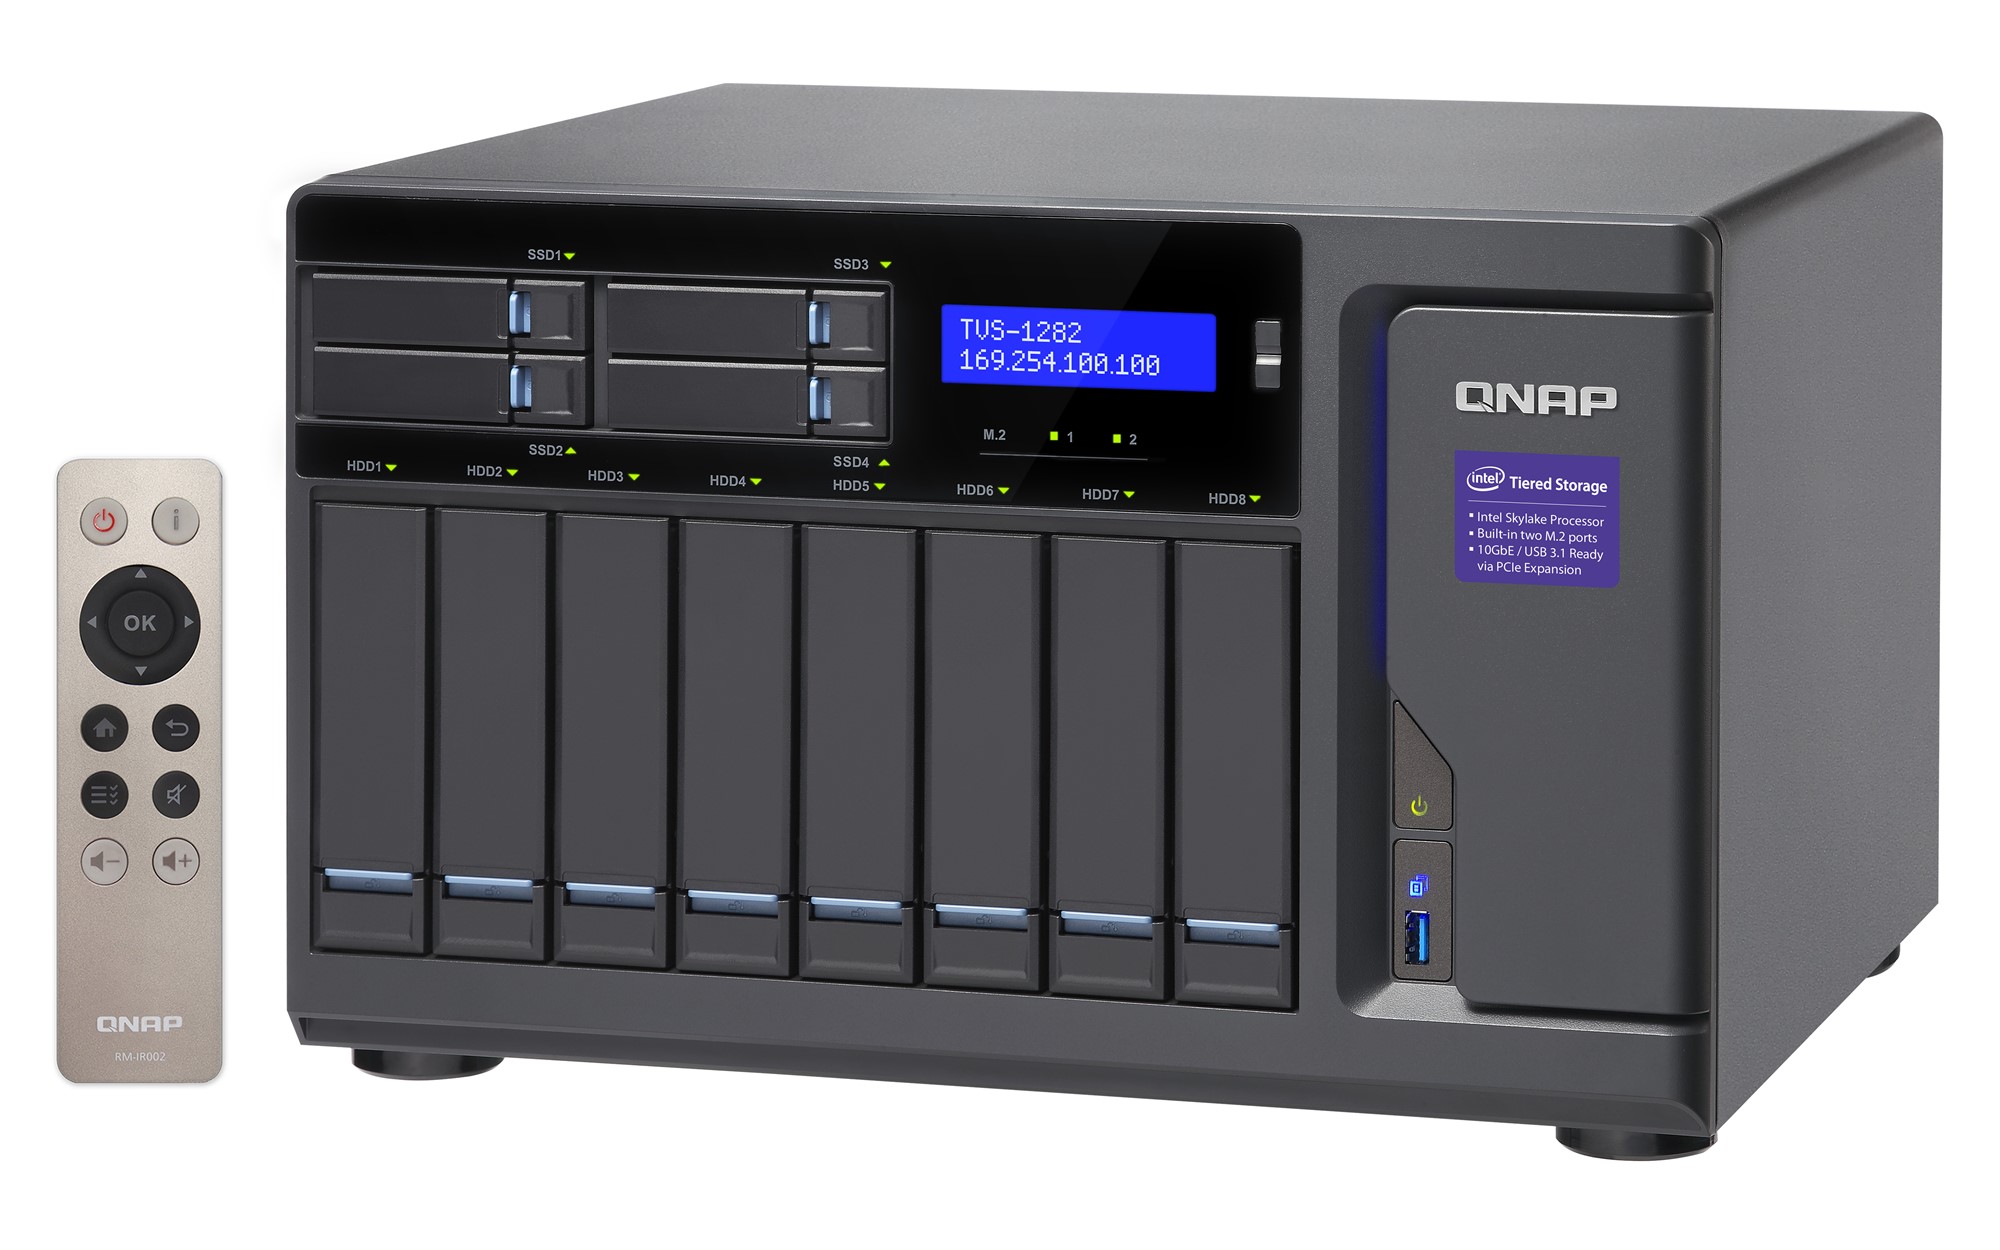 Сетевой RAID-накопитель QNAP 12 отсеков для HDD. Четырехъядерный Intel Core i7-6700 3,4 ГГц, 32 ГБ DDR4 RAM, блок питания 450 Вт. TVS-1282-I7-32G-450W TVS-1282-I7-32G-450W #4